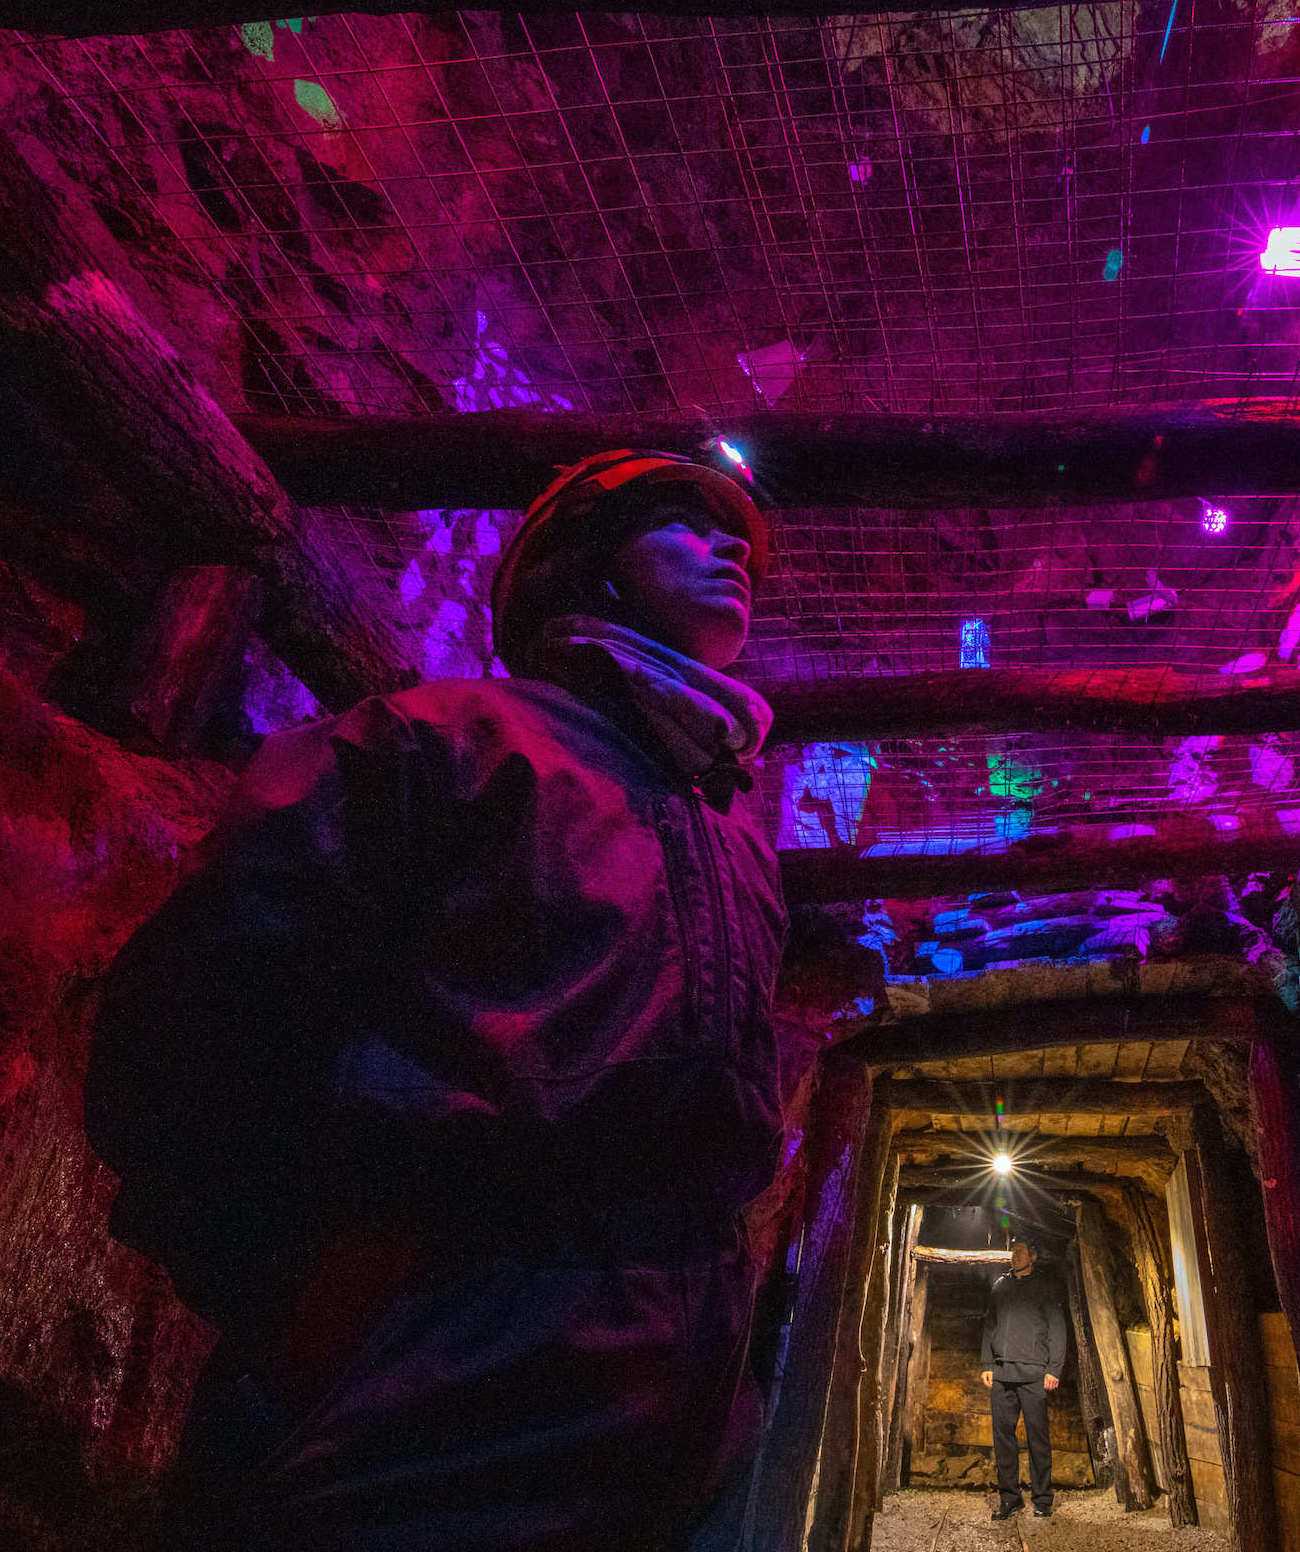 Izjemna barvitost v notrajnosti rudnika je ena izmed posebnosti Rudnika v Litiji.